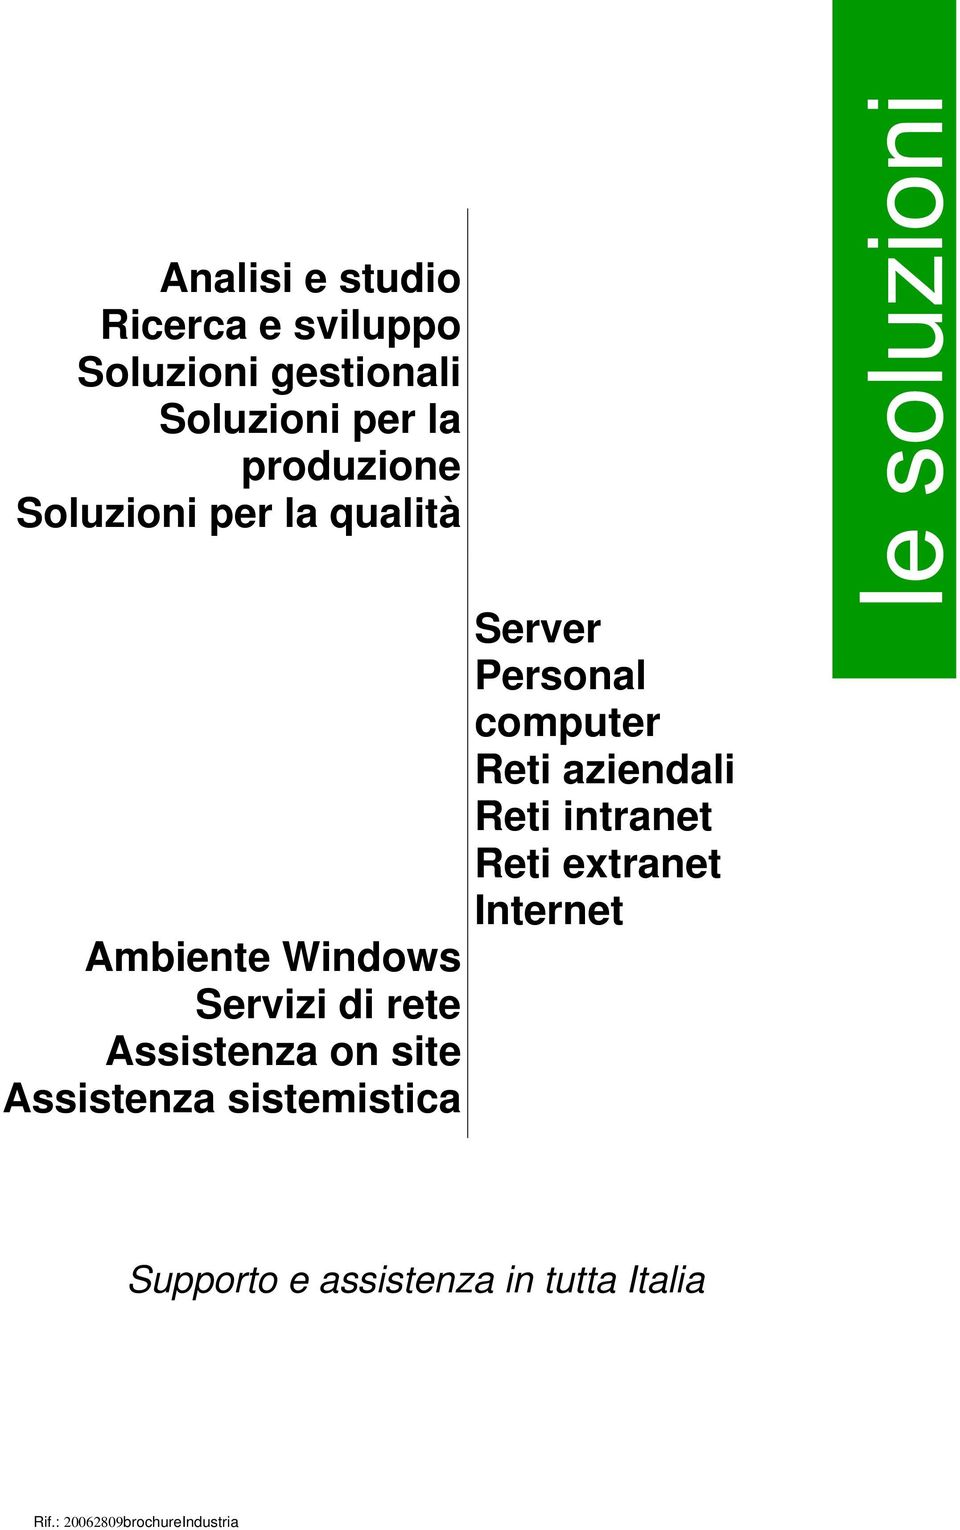 Assistenza on site Assistenza sistemistica Server Personal computer Reti